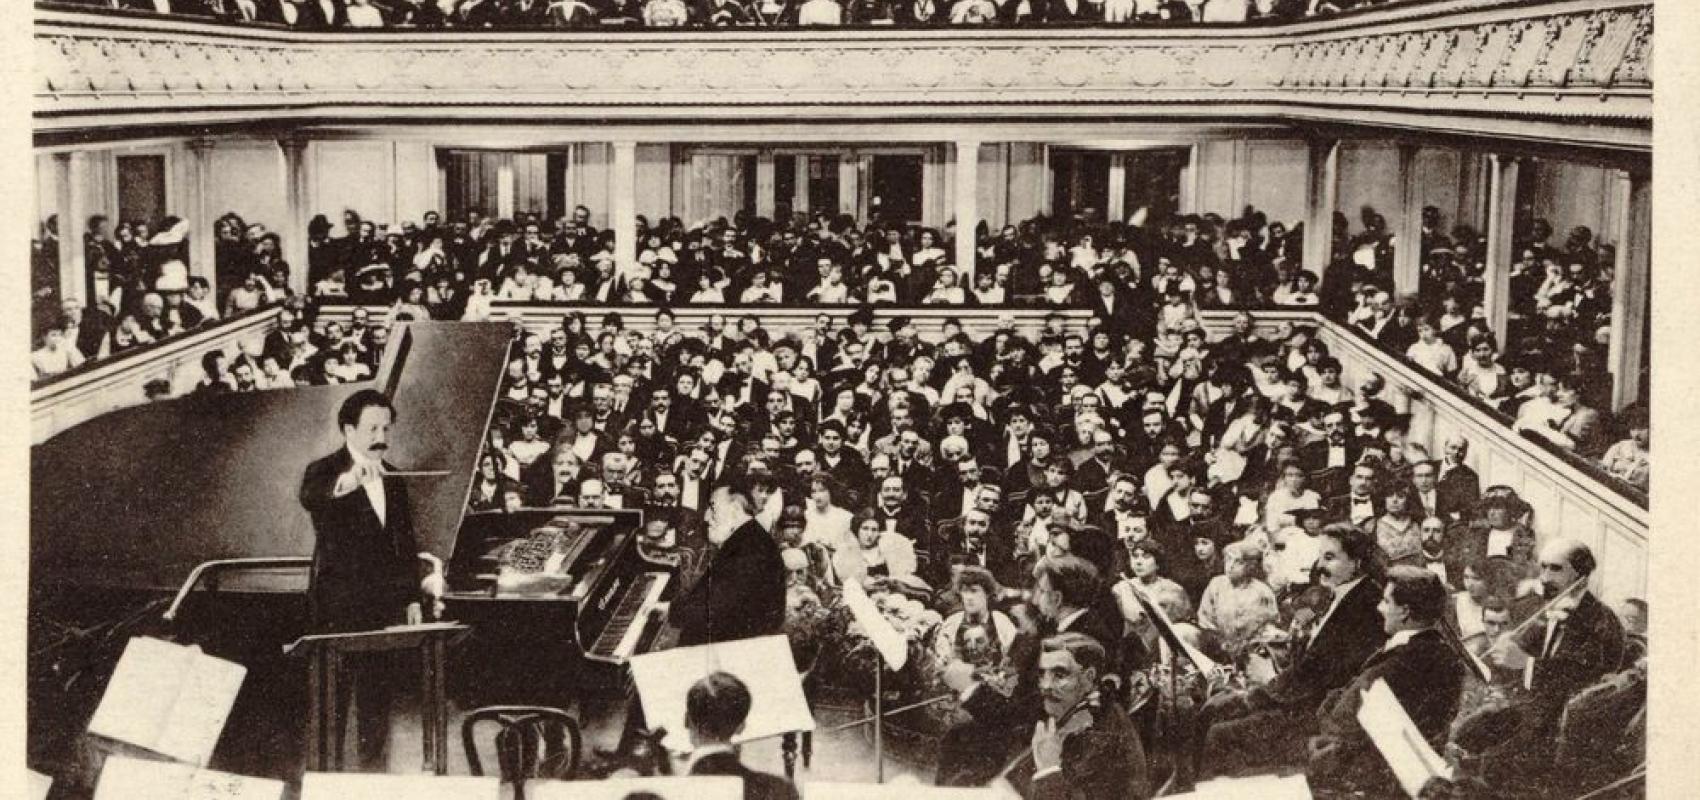 Monsieur Camillle Saint-Saëns, au piano Gaveau, à son dernier concert donné Salle Gaveau à Paris - 6 novembre 1913 - BnF, département Musique